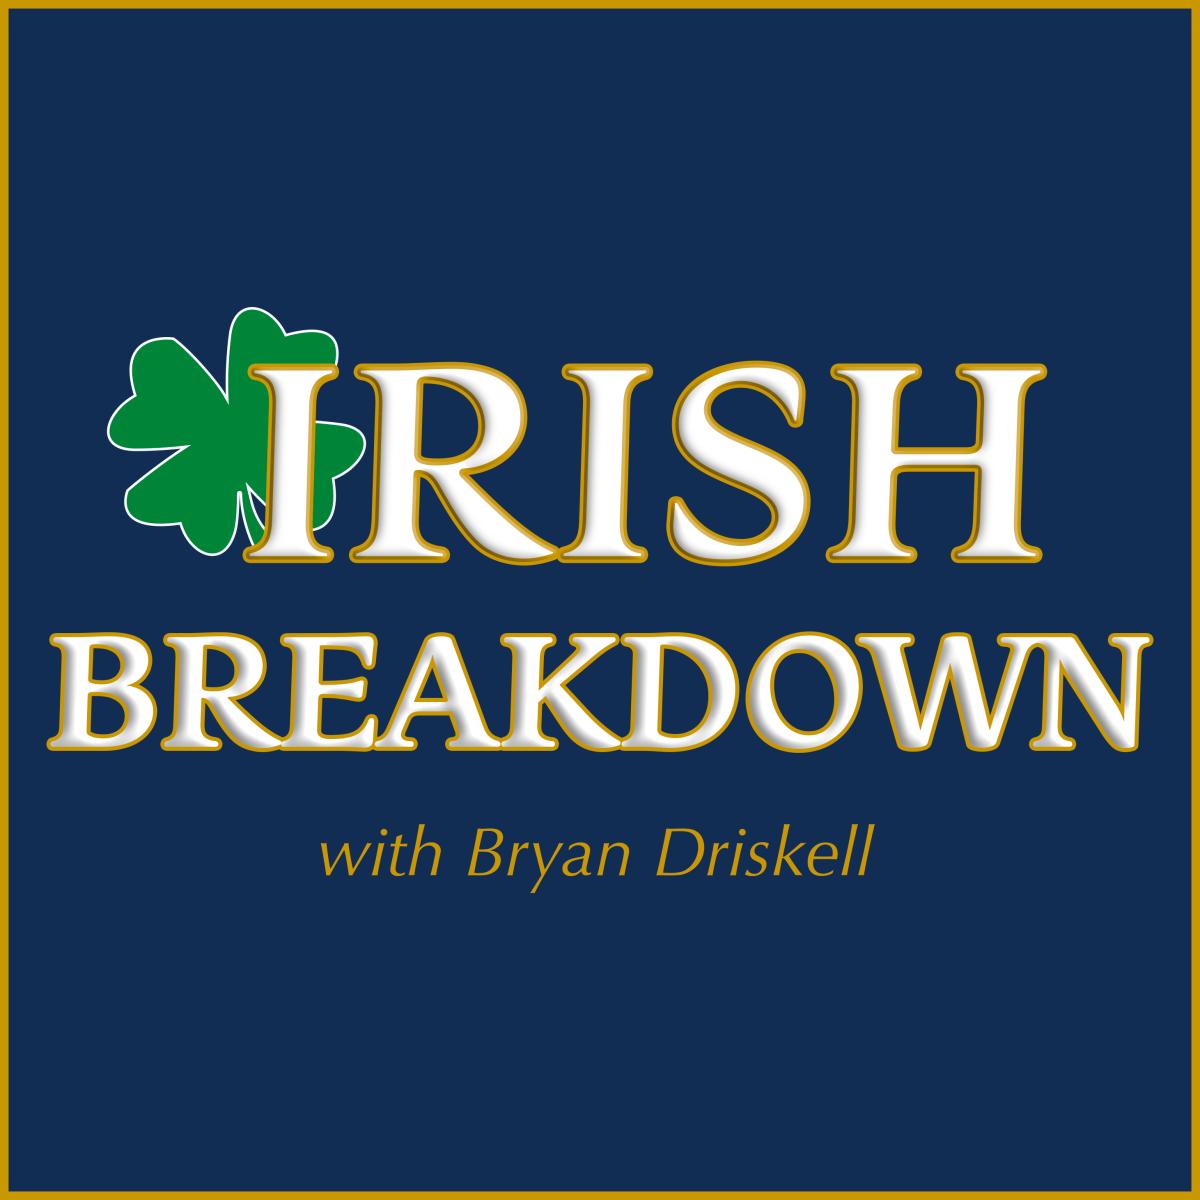 IrishBreakdownLogoSquare